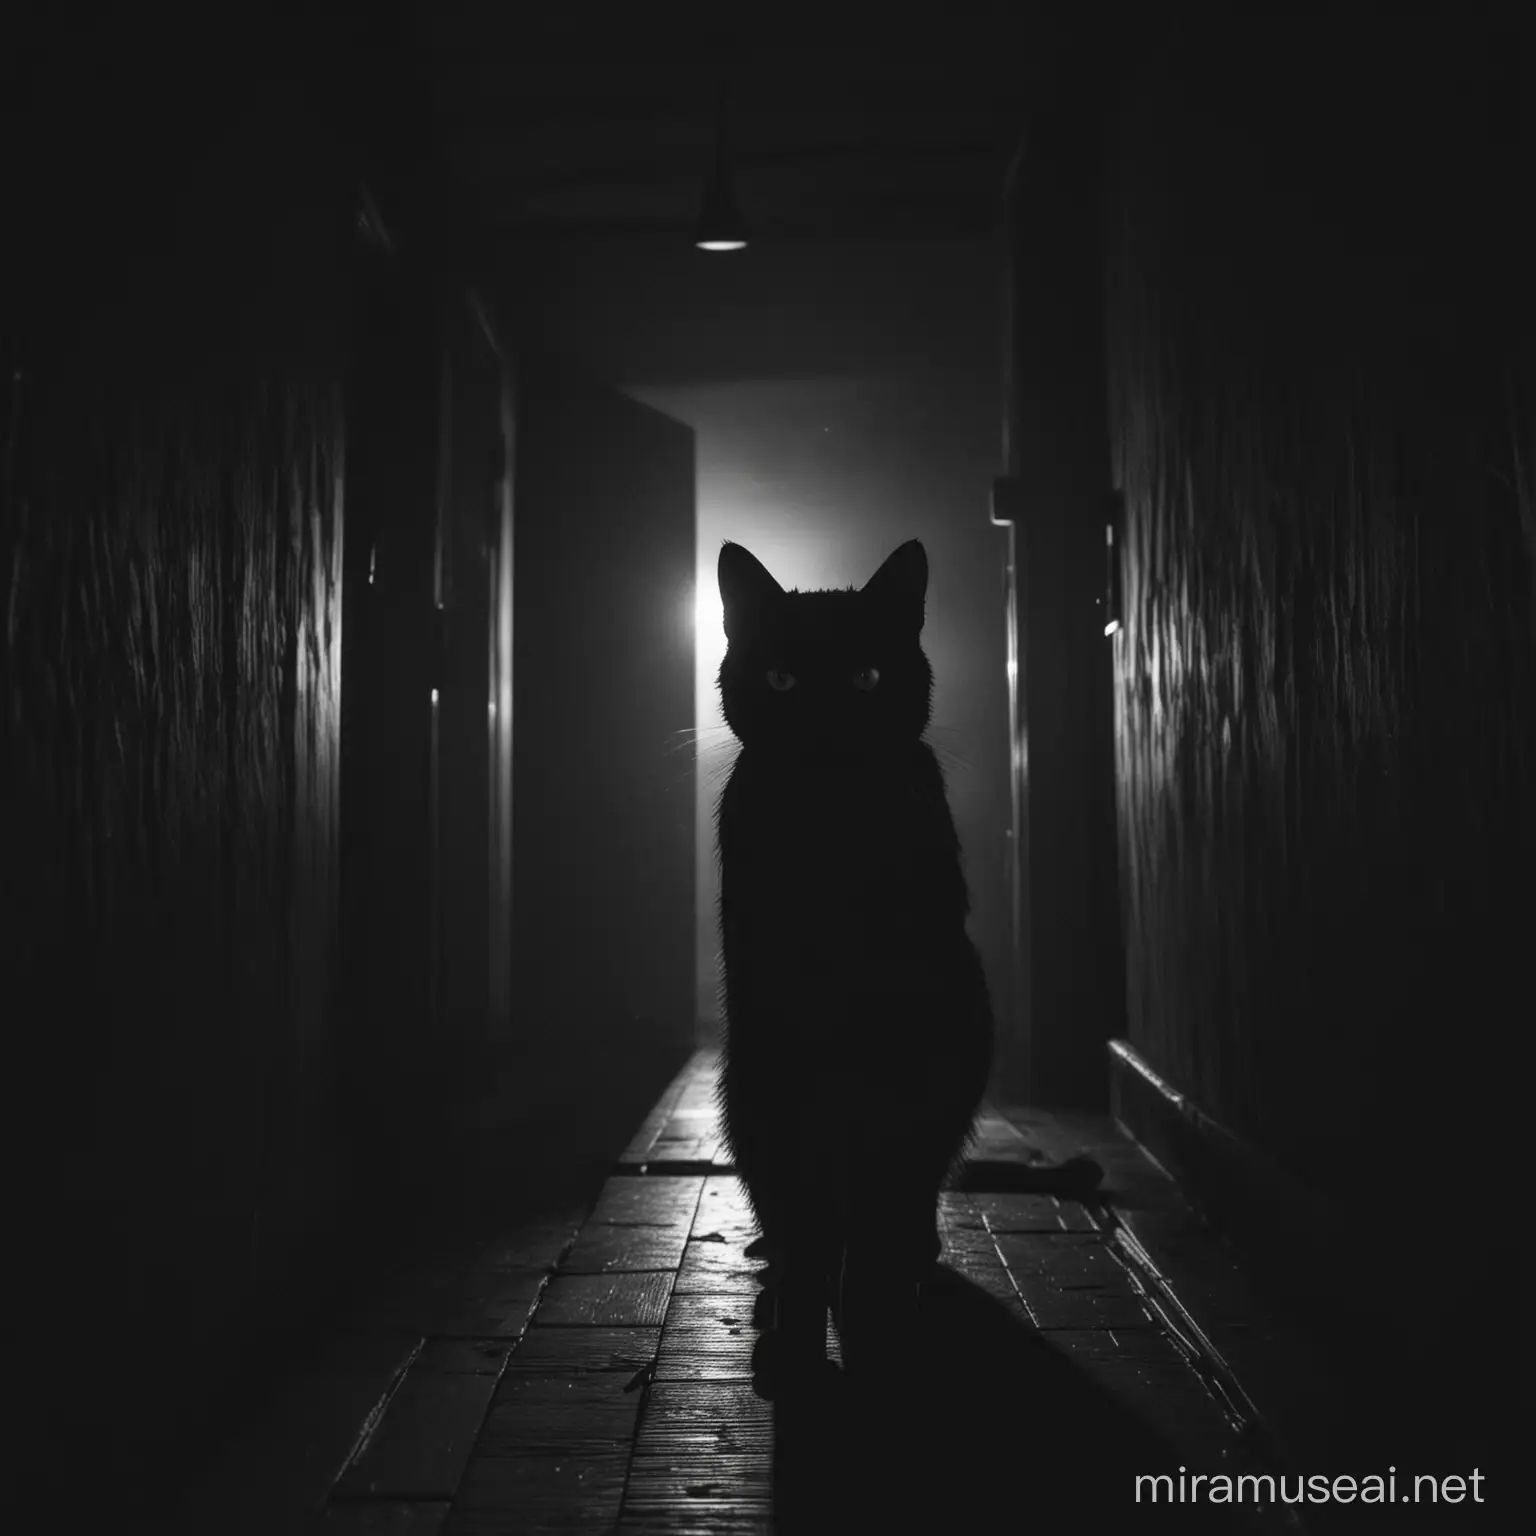 una silueta de un gato negro con mirada siniestra y malevola dentro de una habitación oscura por la noche